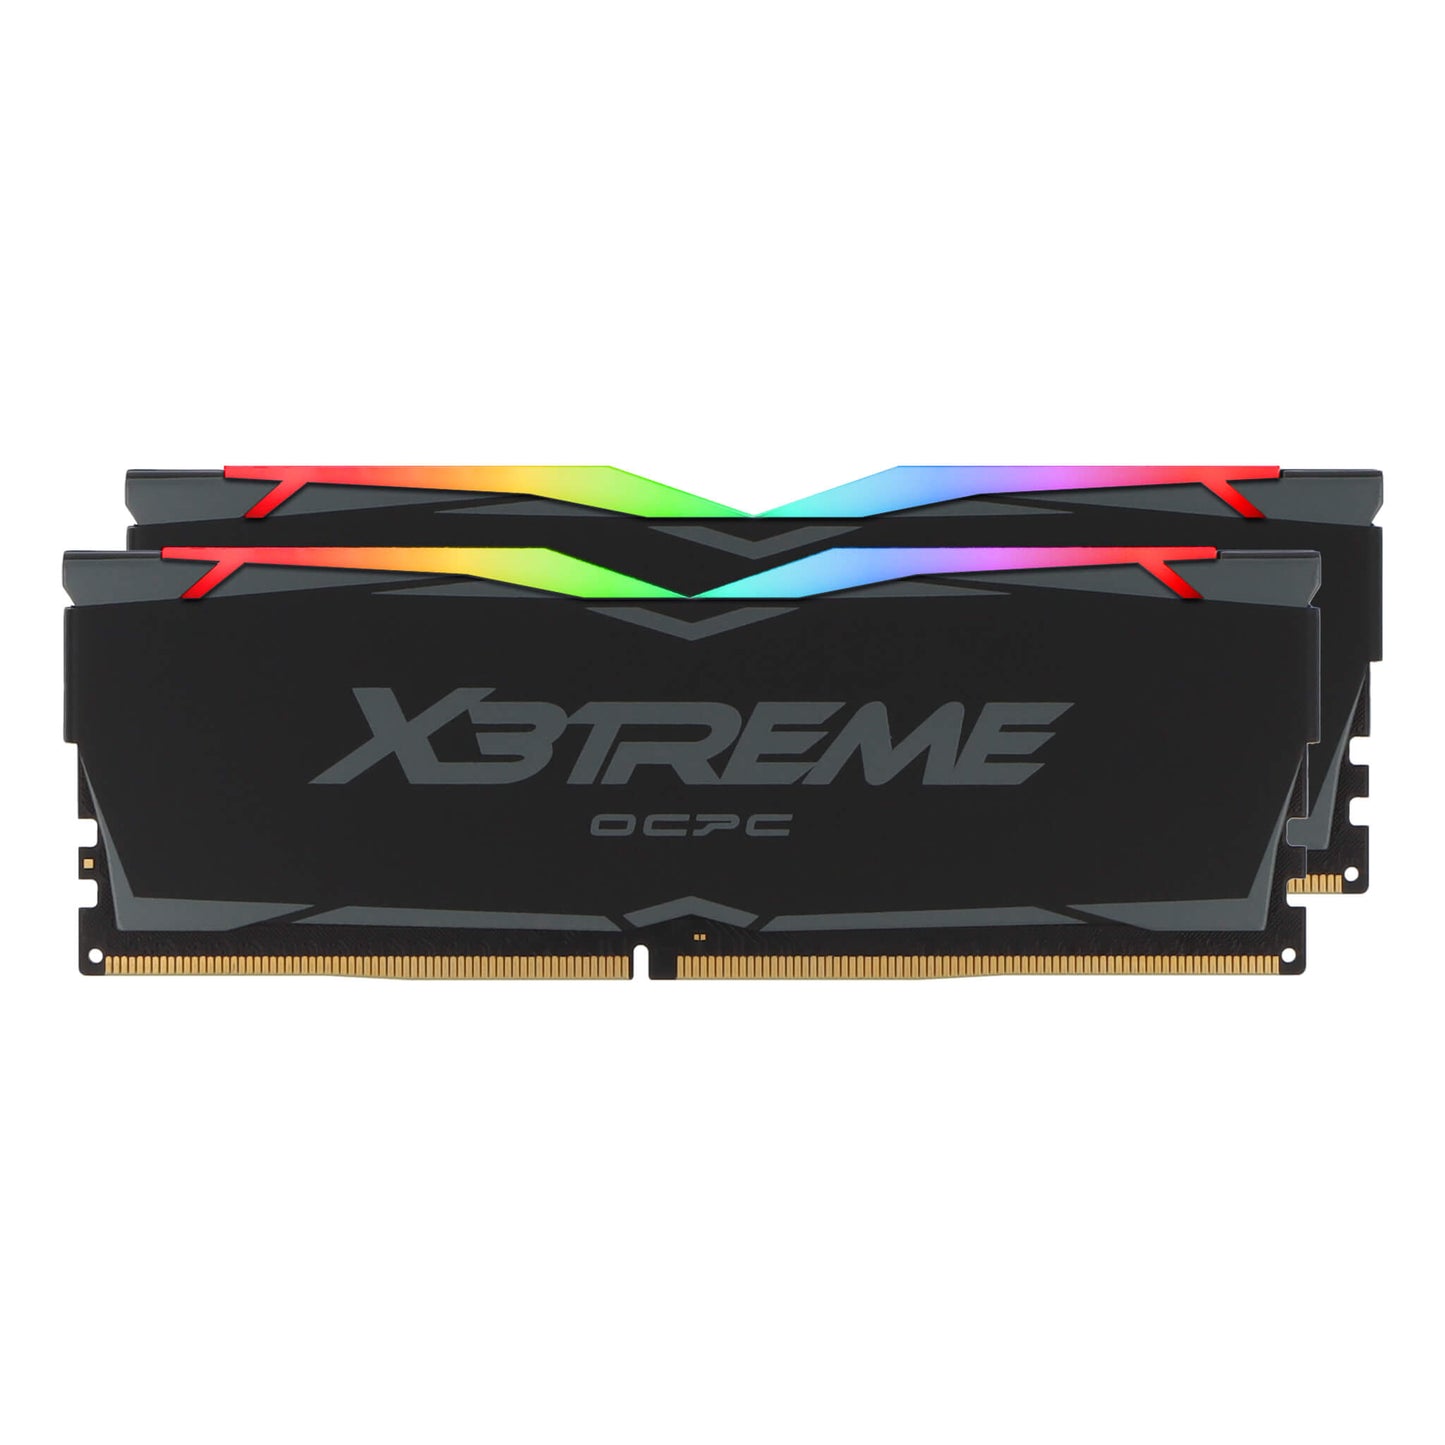 OCPC X3treme RGB DDR4 16GB Kit (2x8GB) - 2666MHz - CL19 - Black